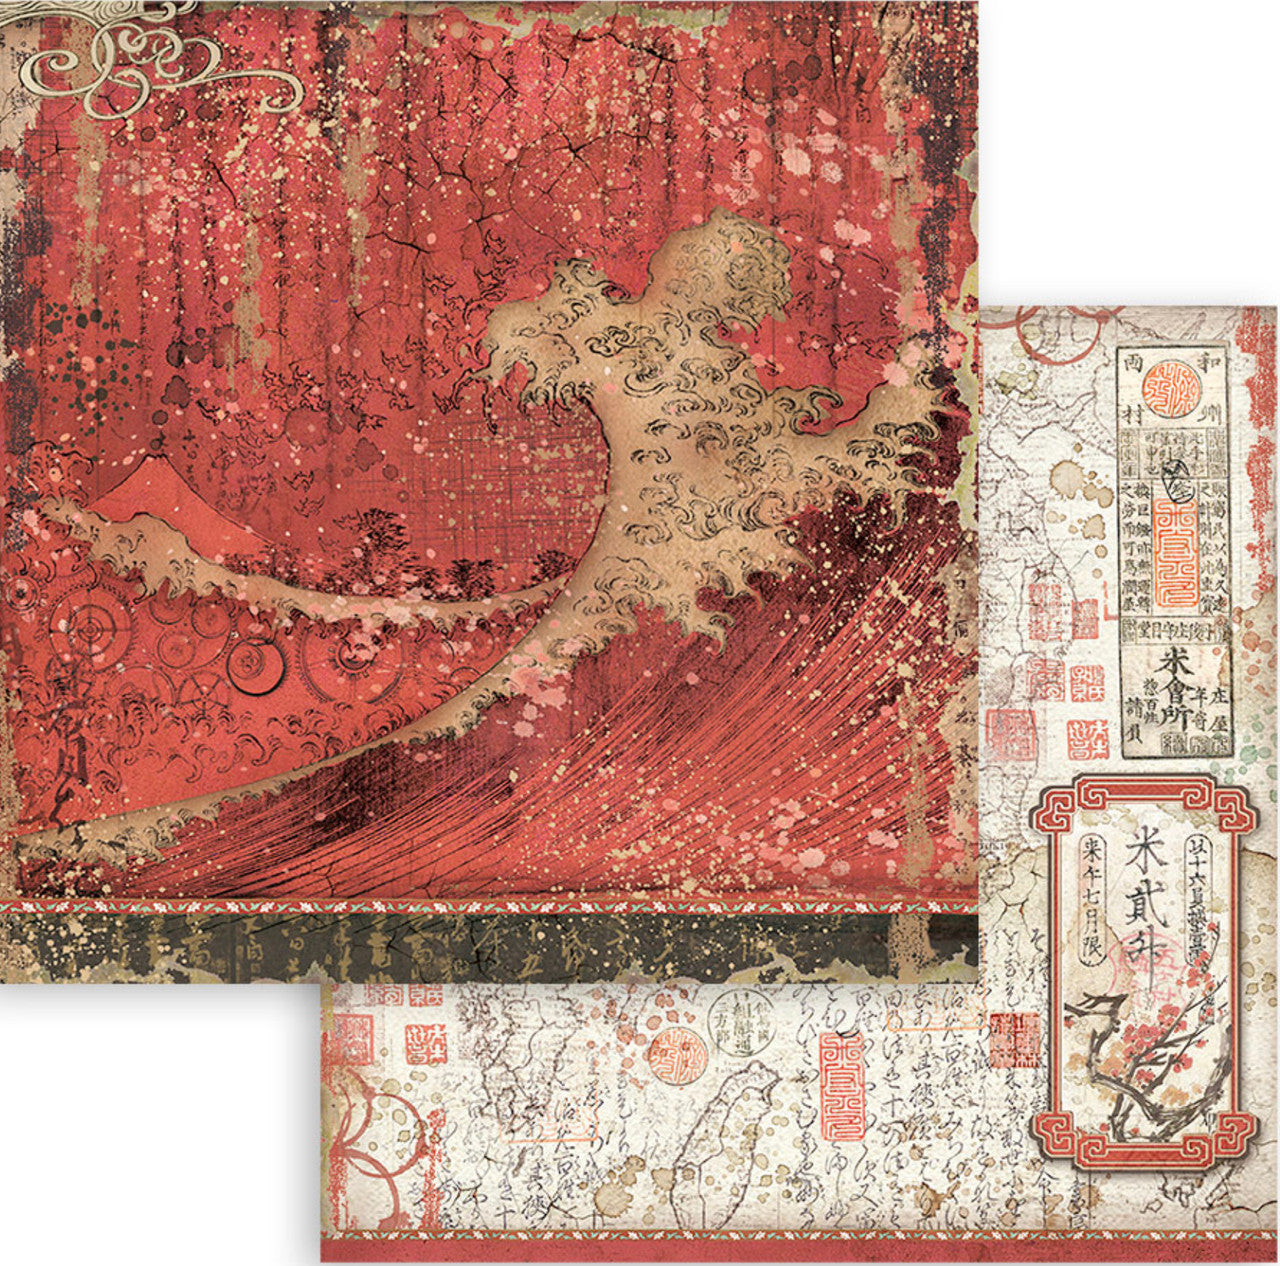 Stamperia (12"x12") dubbelzijdig papierpakket - Sir Vagabond in Japan 